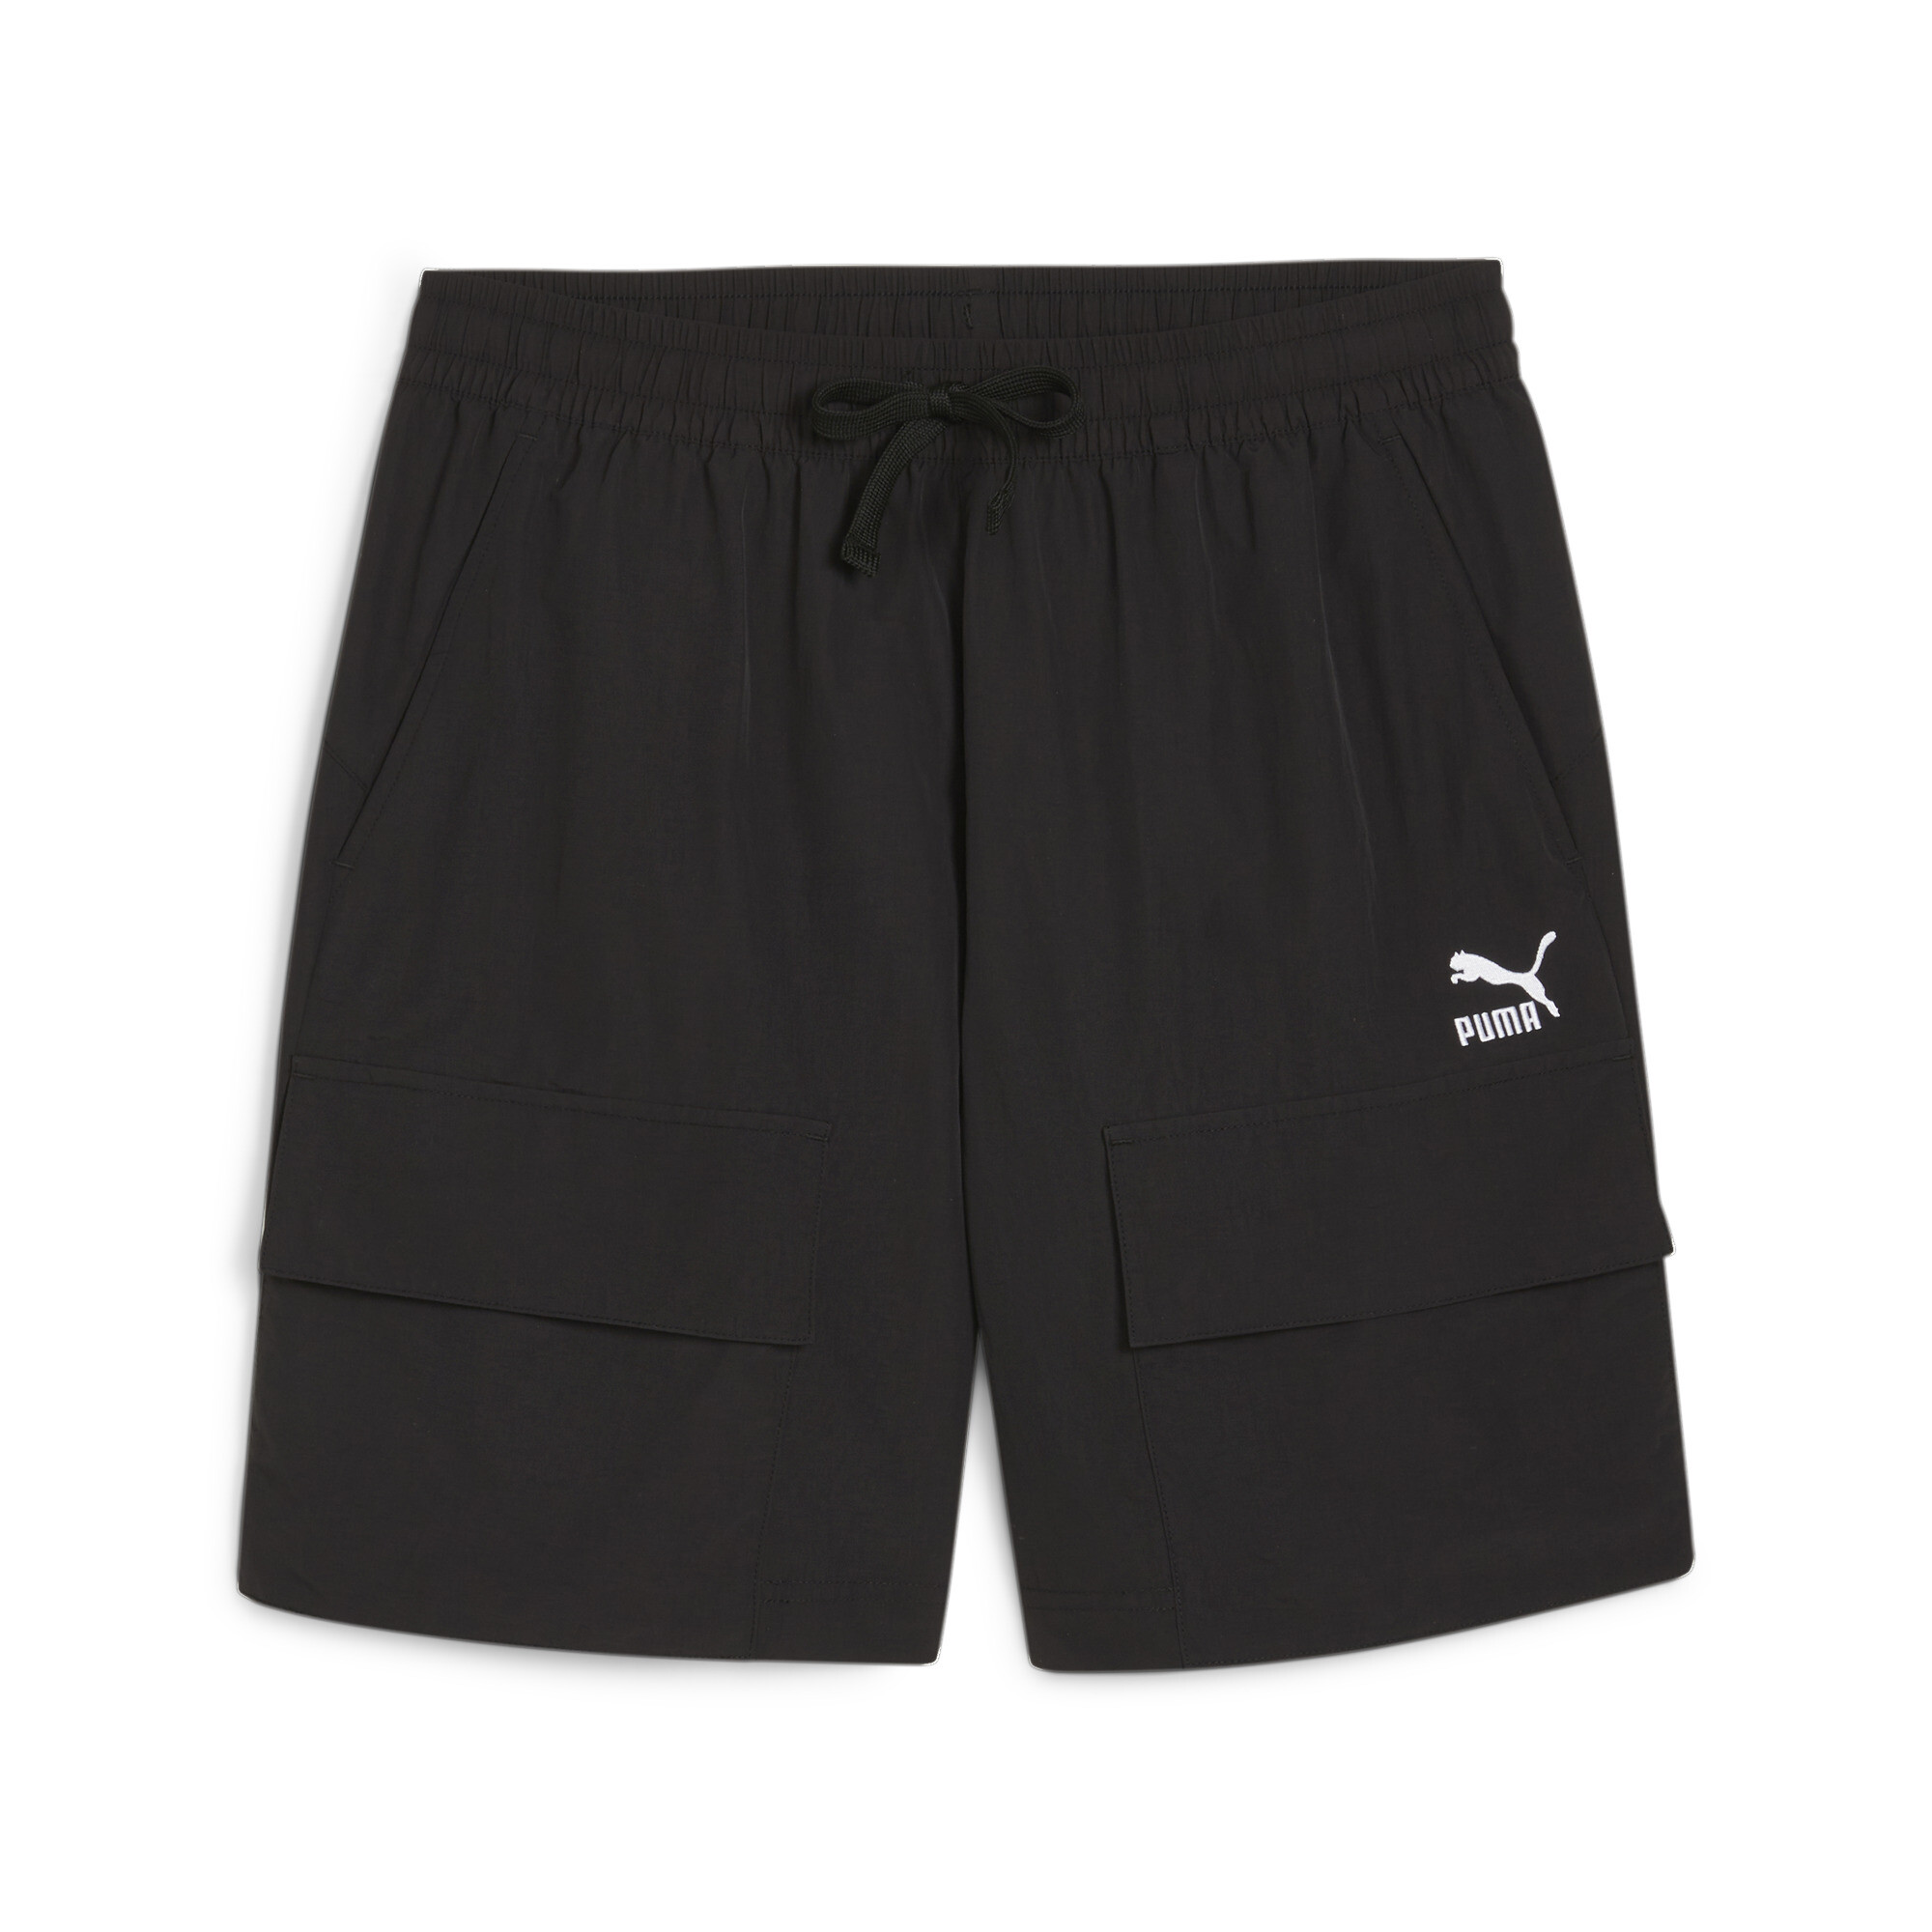 Men's PUMA CLASSICS Cargo Shorts In Black, Size Small